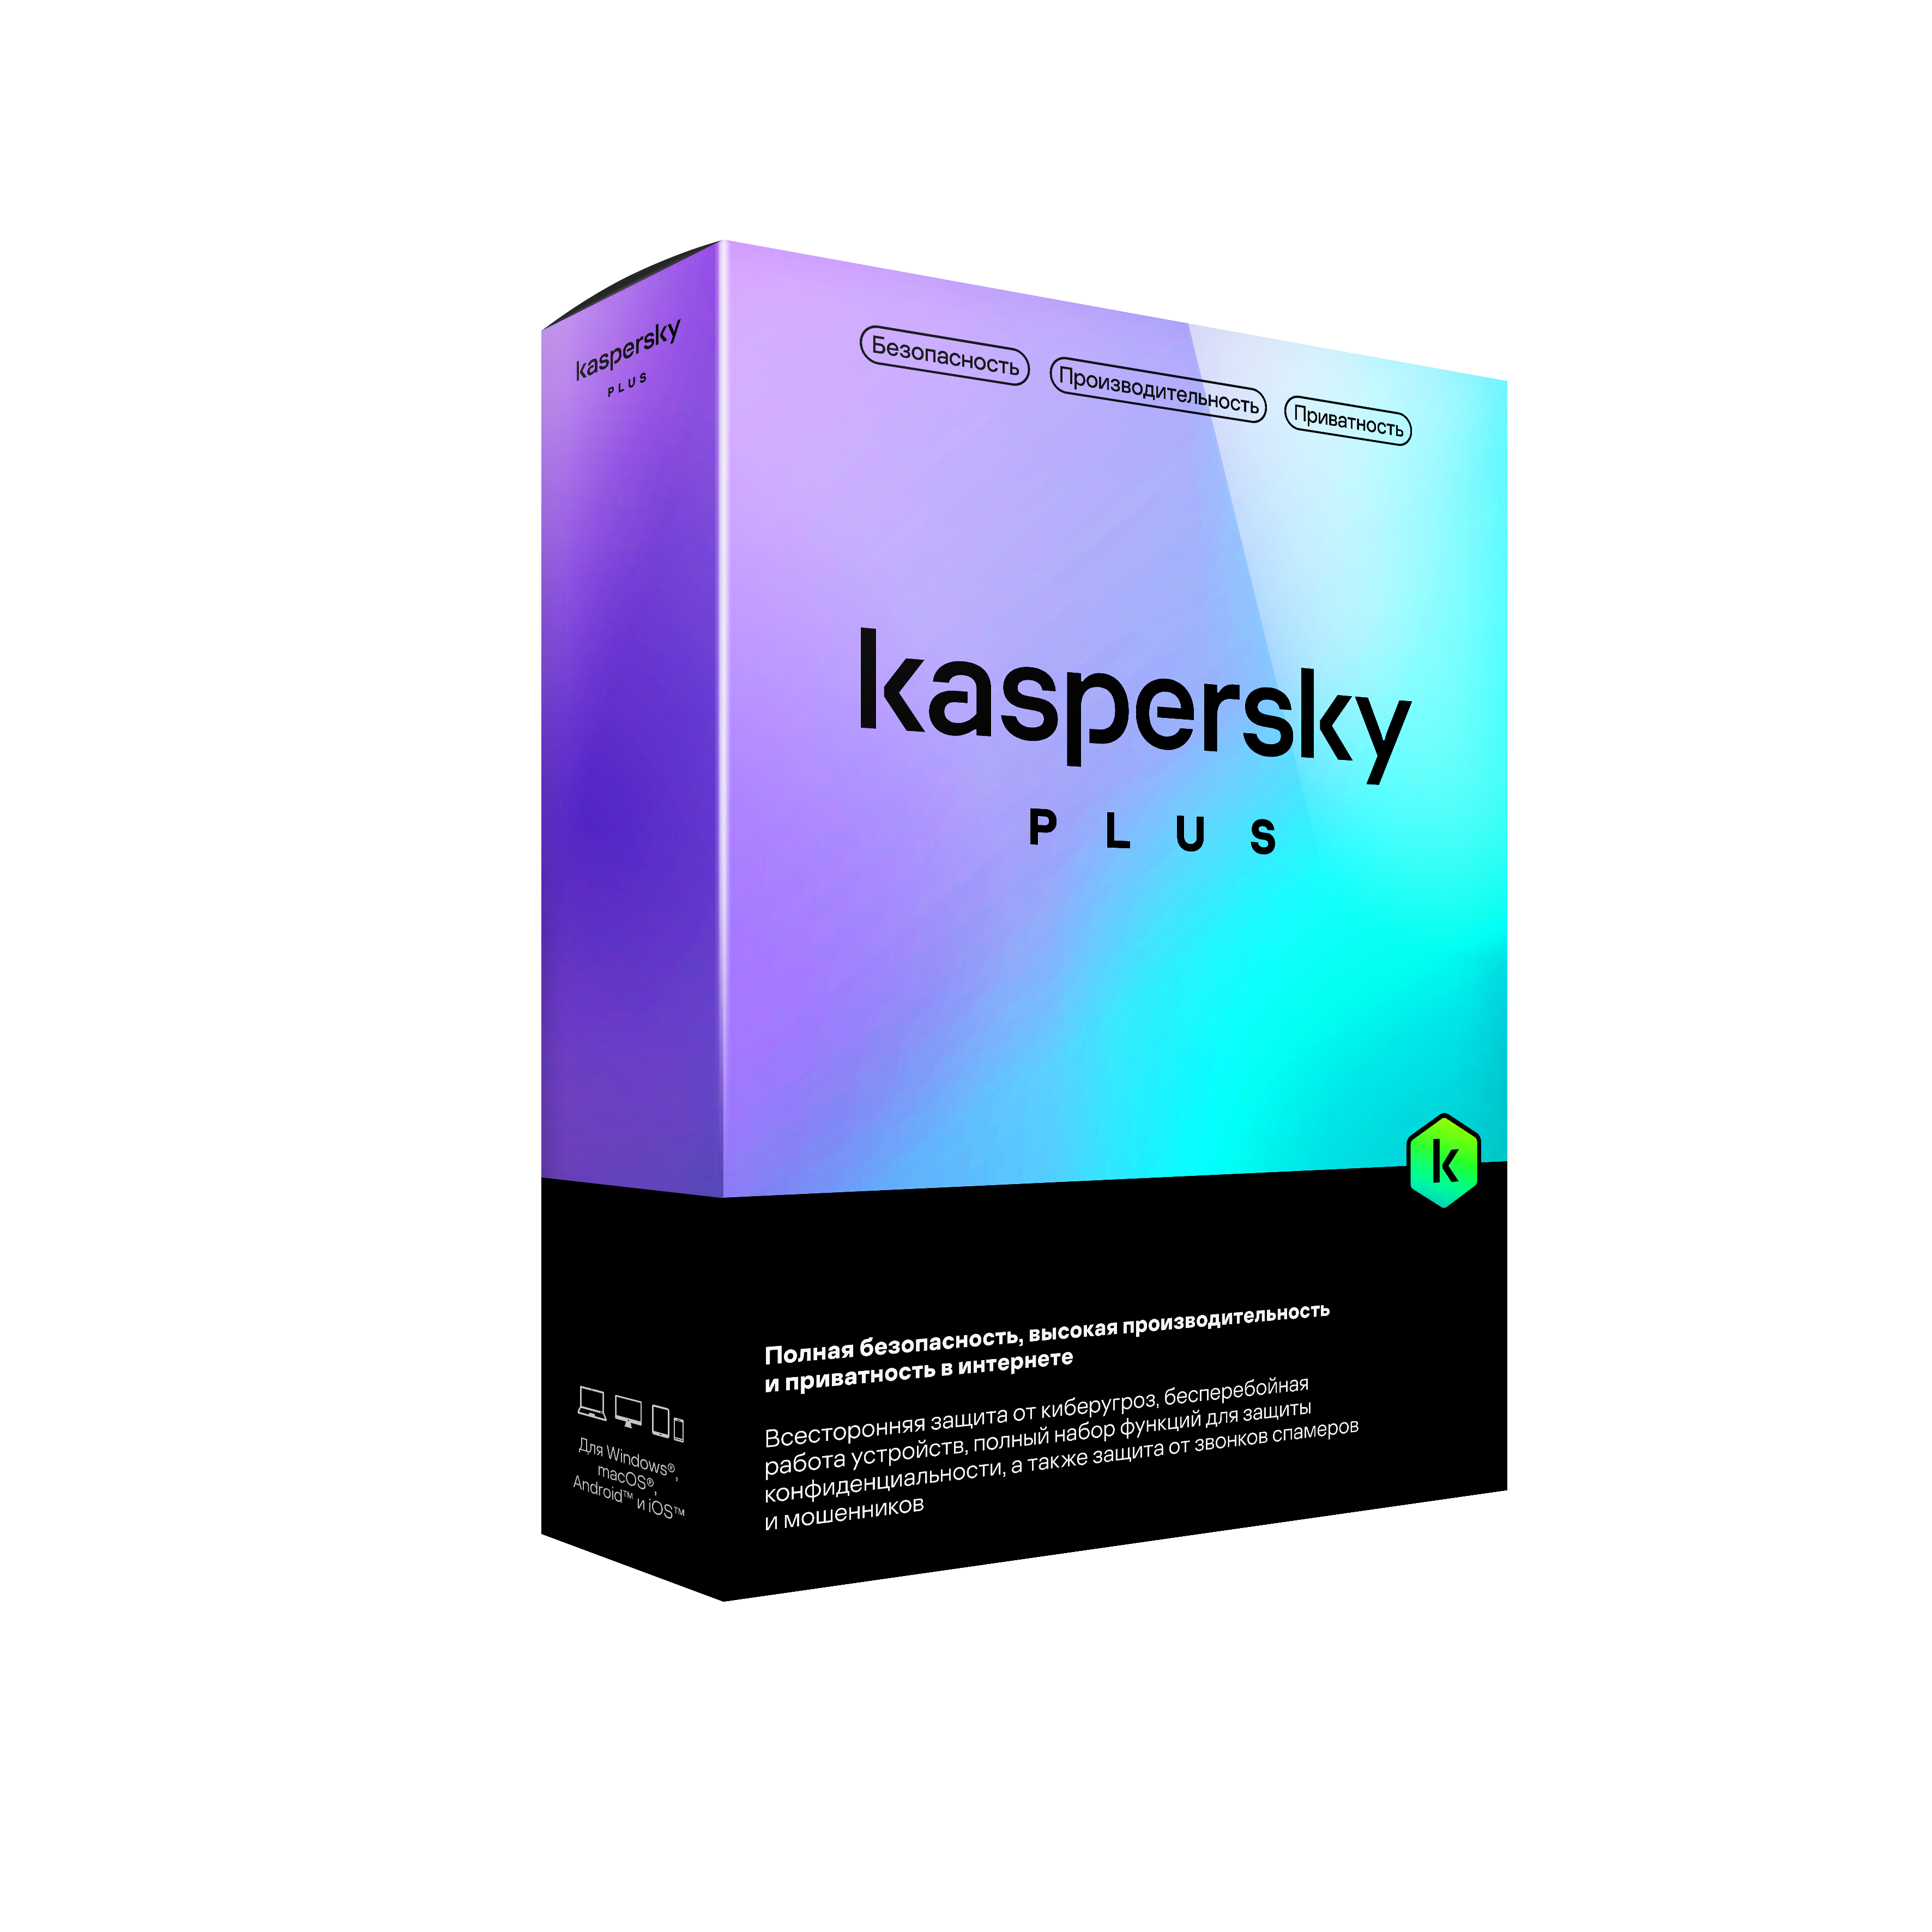 BOX 3D_Kaspersky Plus